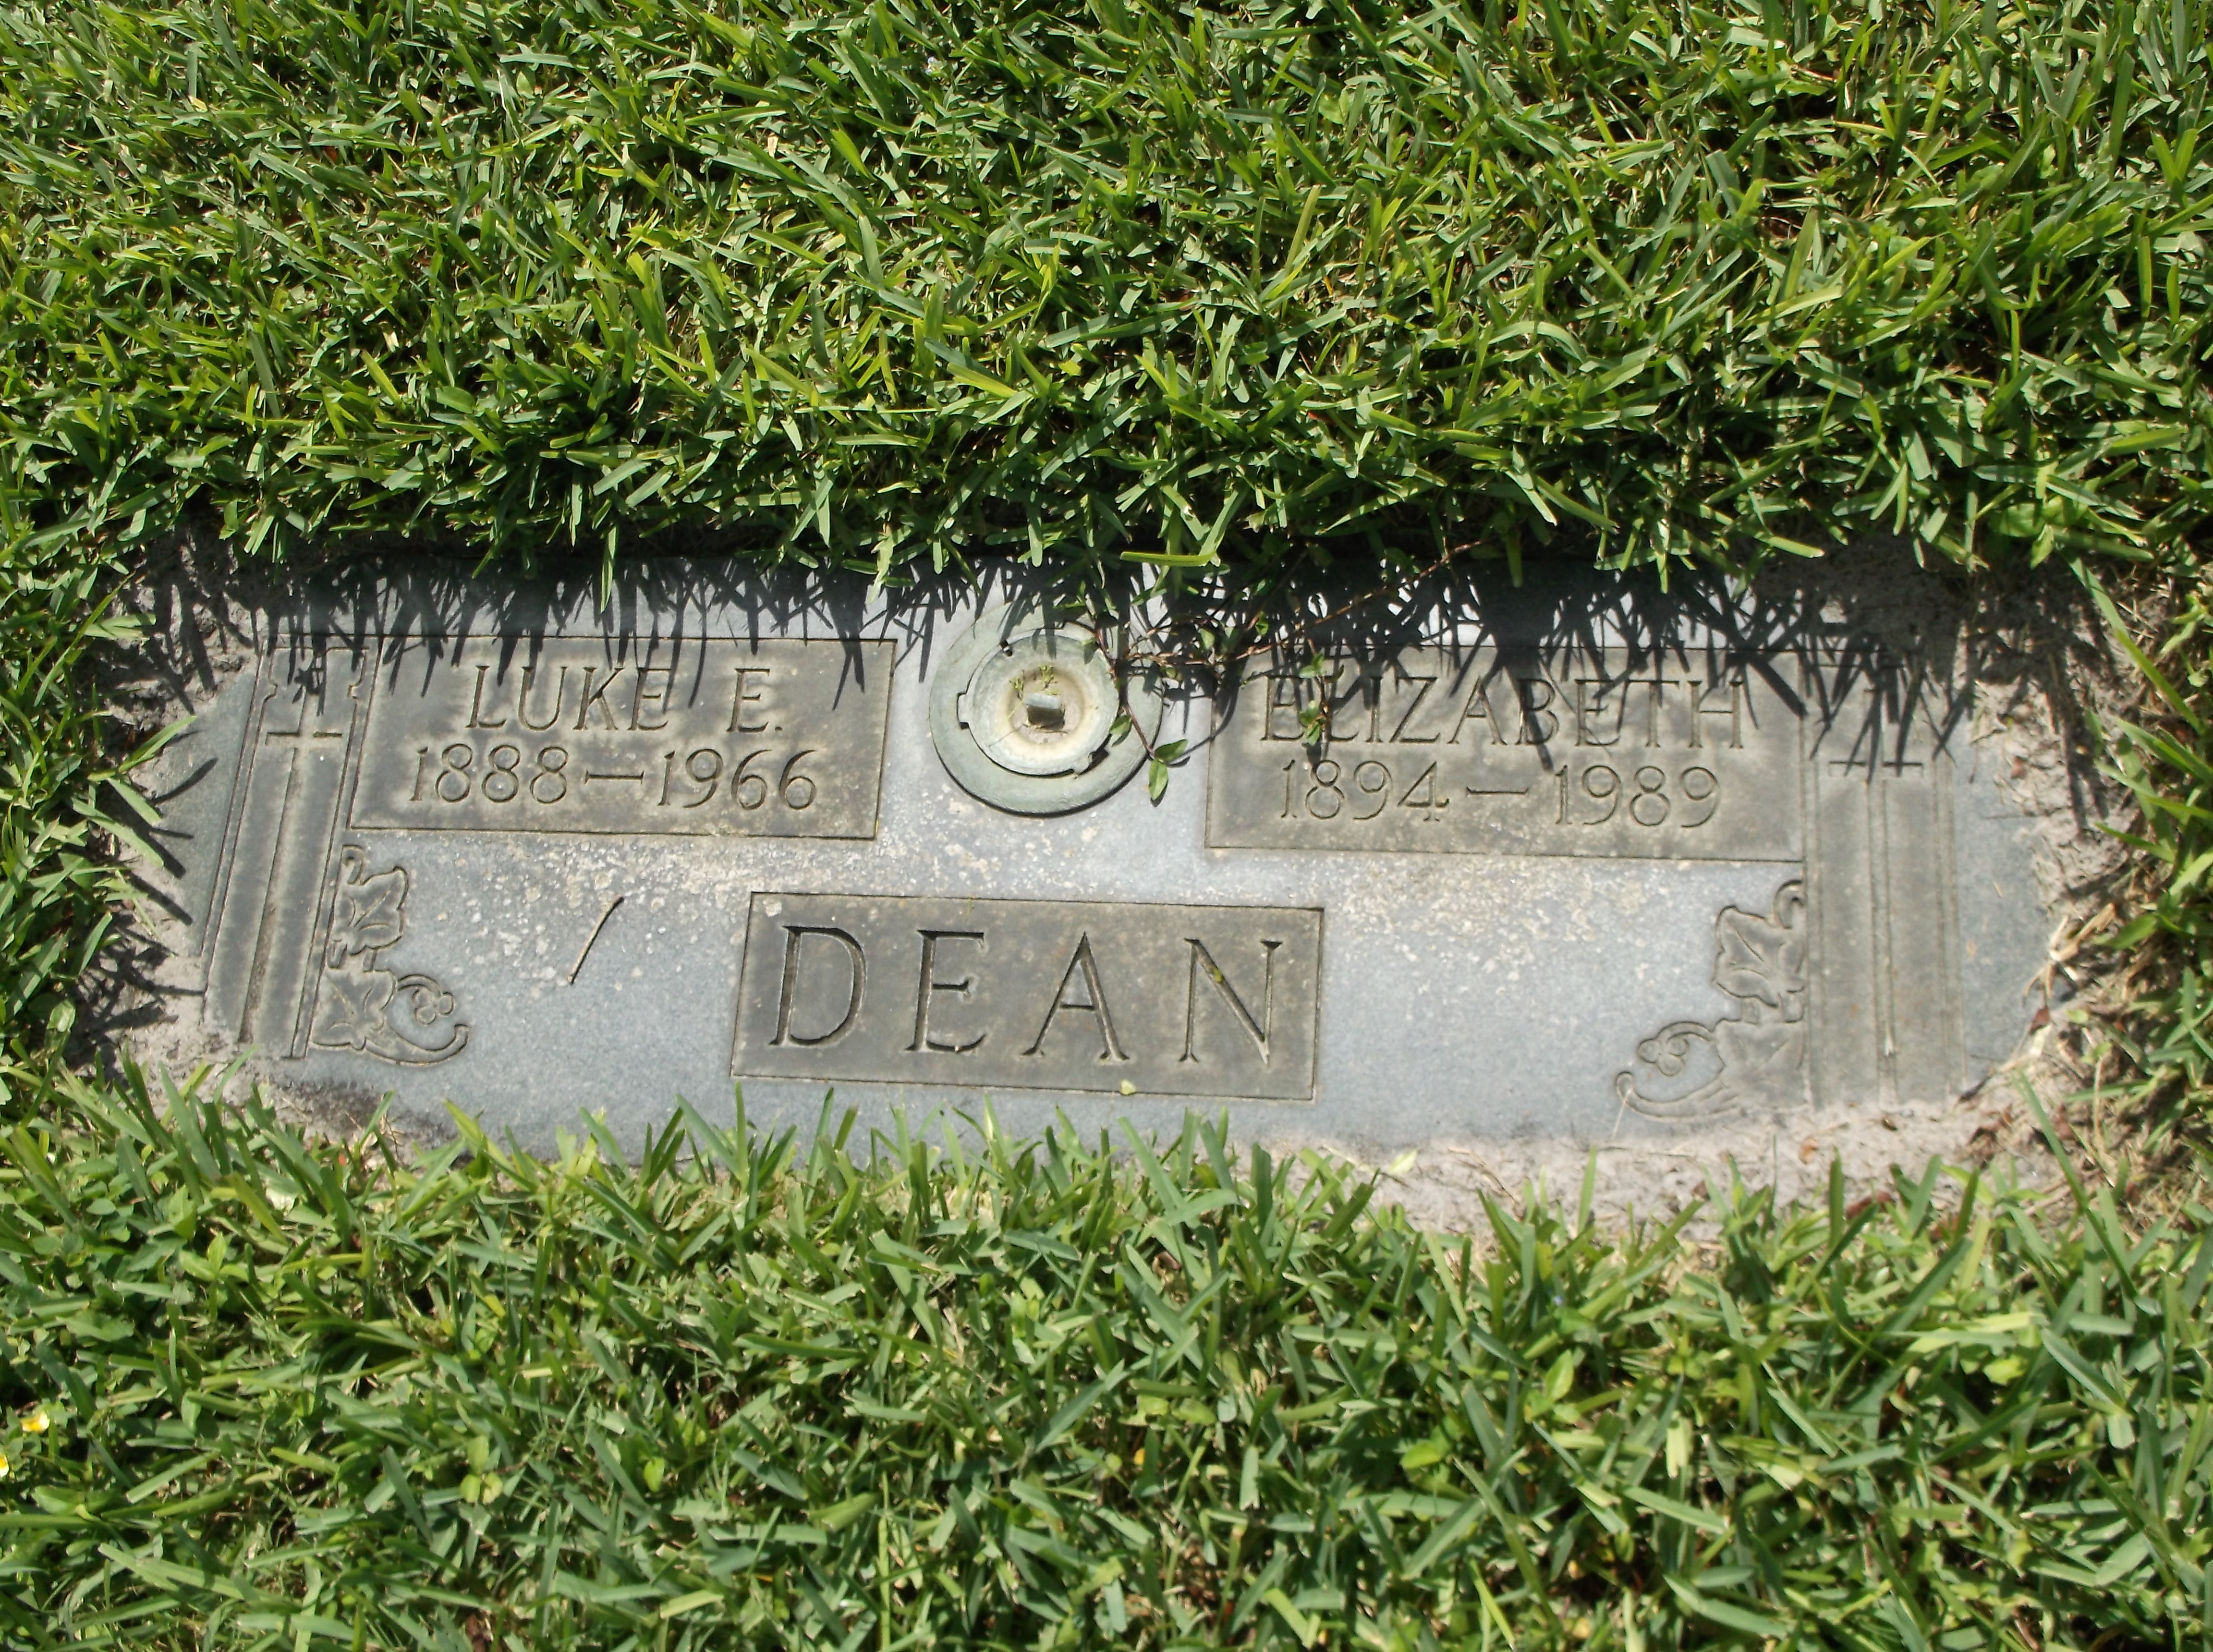 Luke E Dean